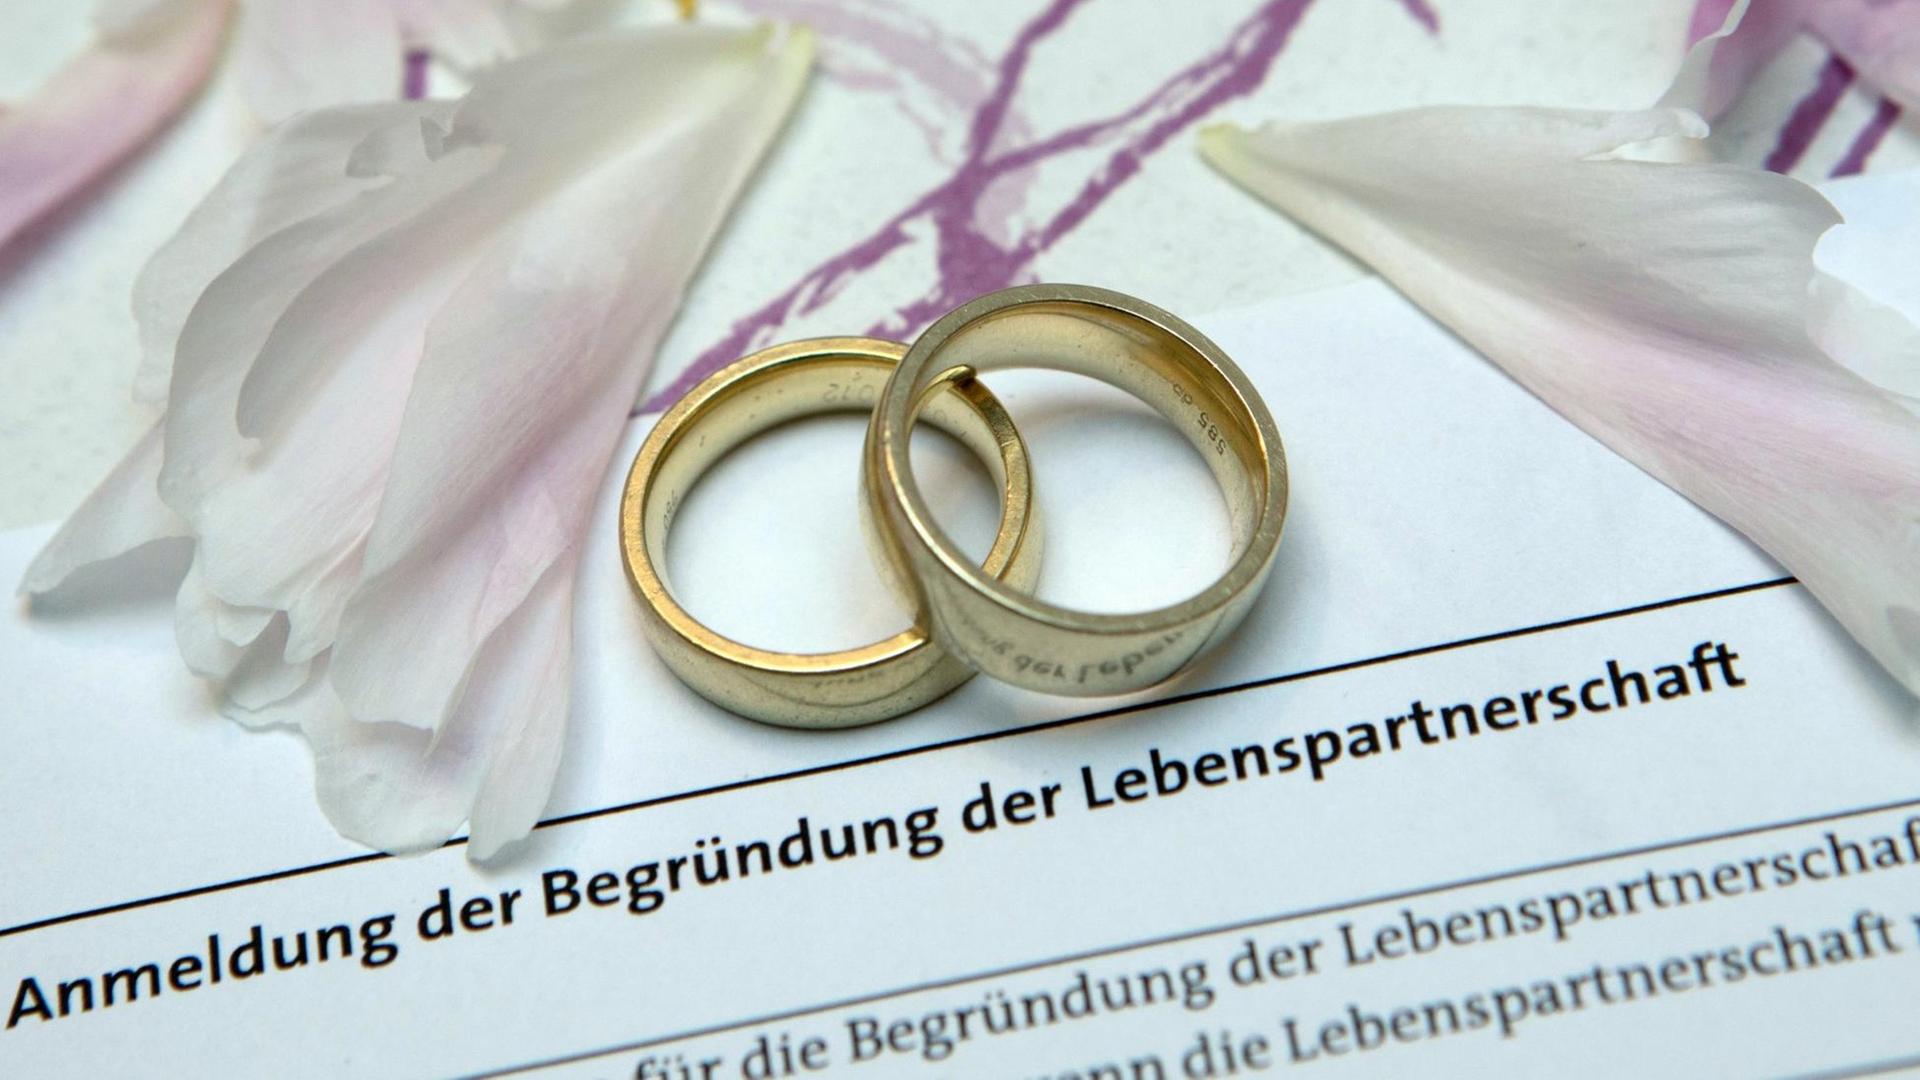 Ringe liegen am 28.06.2017 in Bremen auf einer Urkunde zu einer Lebenspartnerschaft. Frauen können Frauen heiraten, dürfen ihre Beziehung aber nicht Ehe nennen. Bislang unterscheidet das deutsche Gesetz zwischen heterosexuellen und gleichgeschlechtliche Paaren.